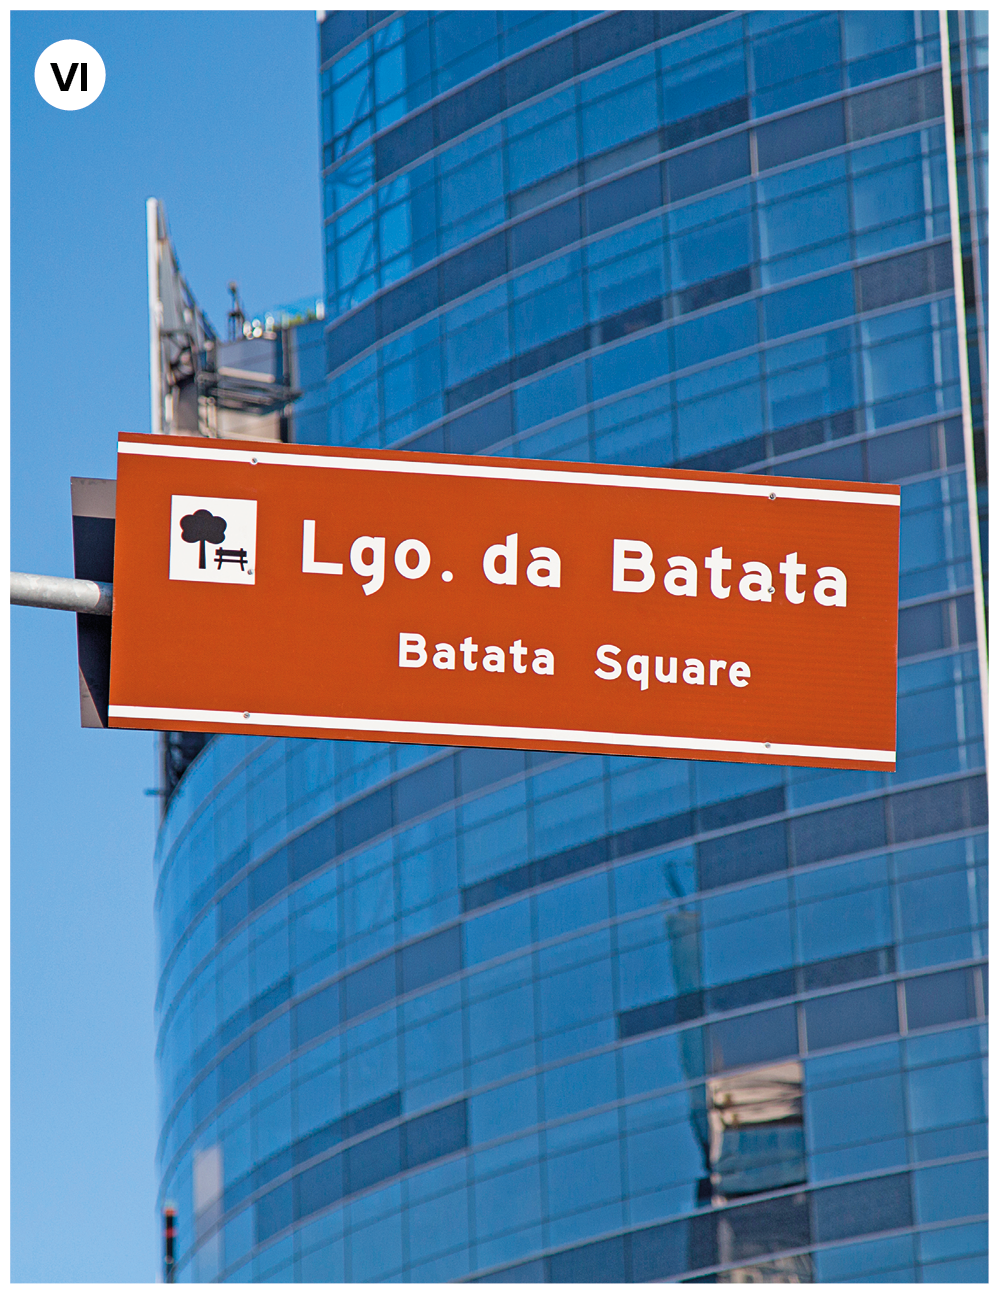 Fotografia seis. Foco na parte superior, placa em marrom com texto em branco: Largo. Da Batata, Batata Square. Ao fundo, vista parcial de um prédio alto espelhado, em tons de azul.